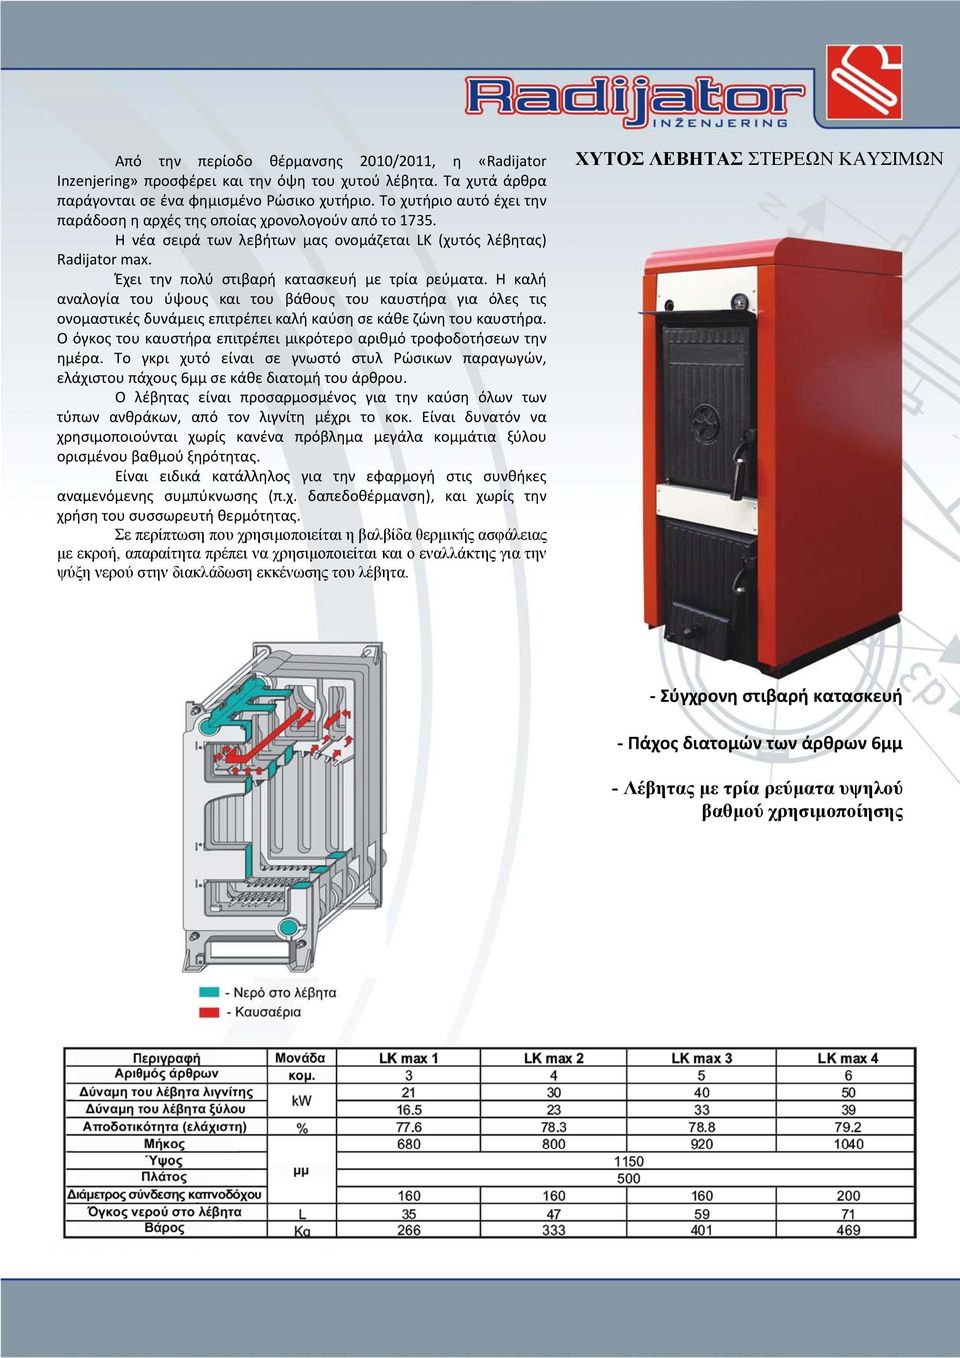 Η καλή αναλογία του ύψους και του βάθους του καυστήρα για όλες τις ονομαστικές δυνάμεις επιτρέπει καλή καύση σε κάθε ζώνη του καυστήρα.